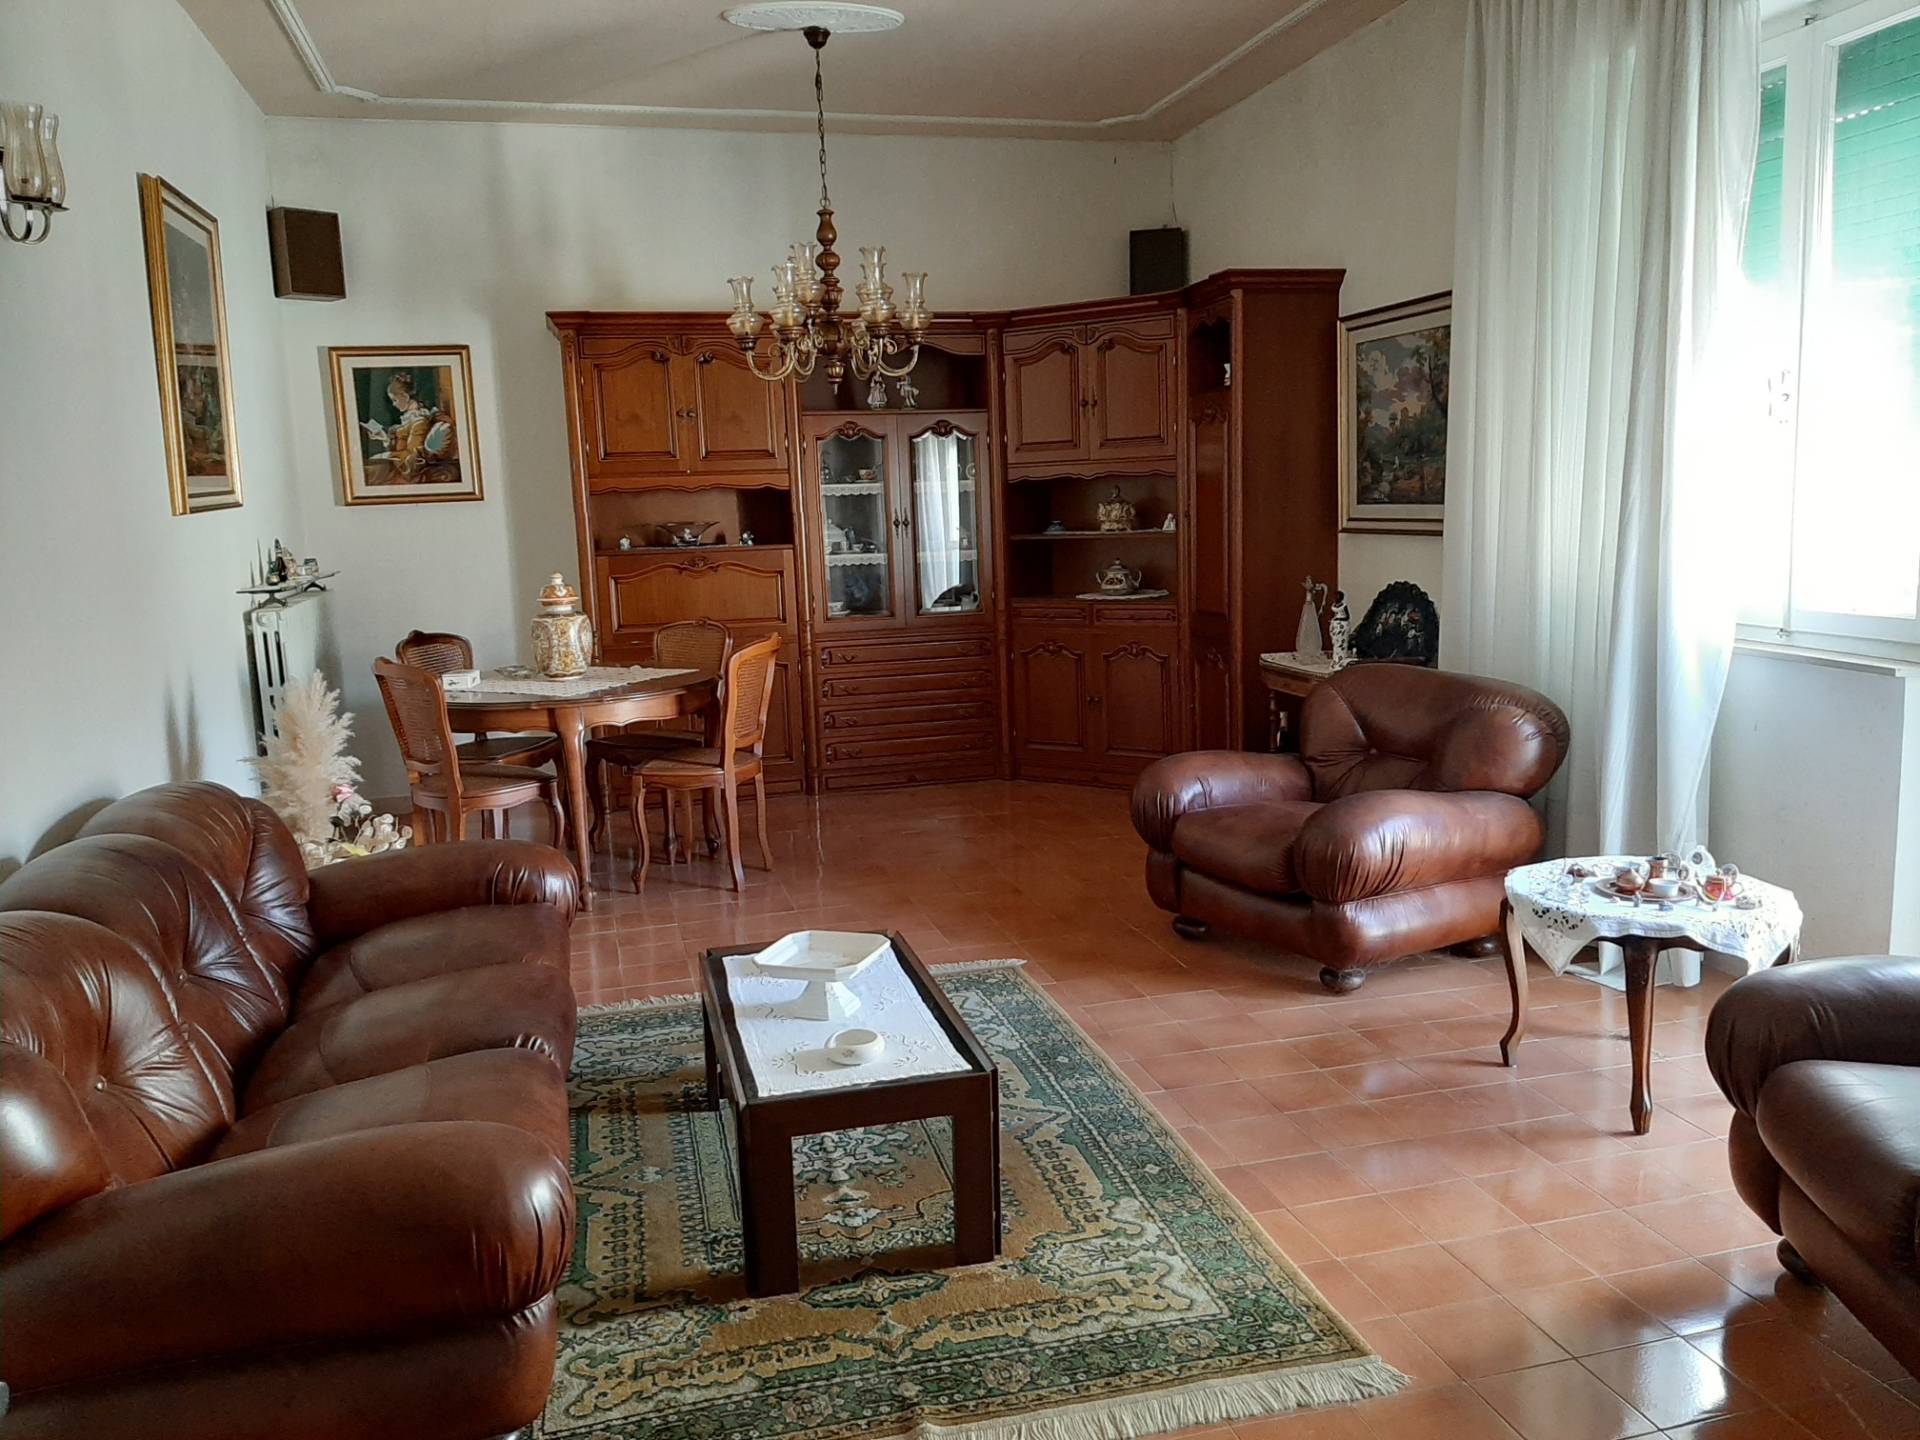 Villa in Vendita a Ponsacco